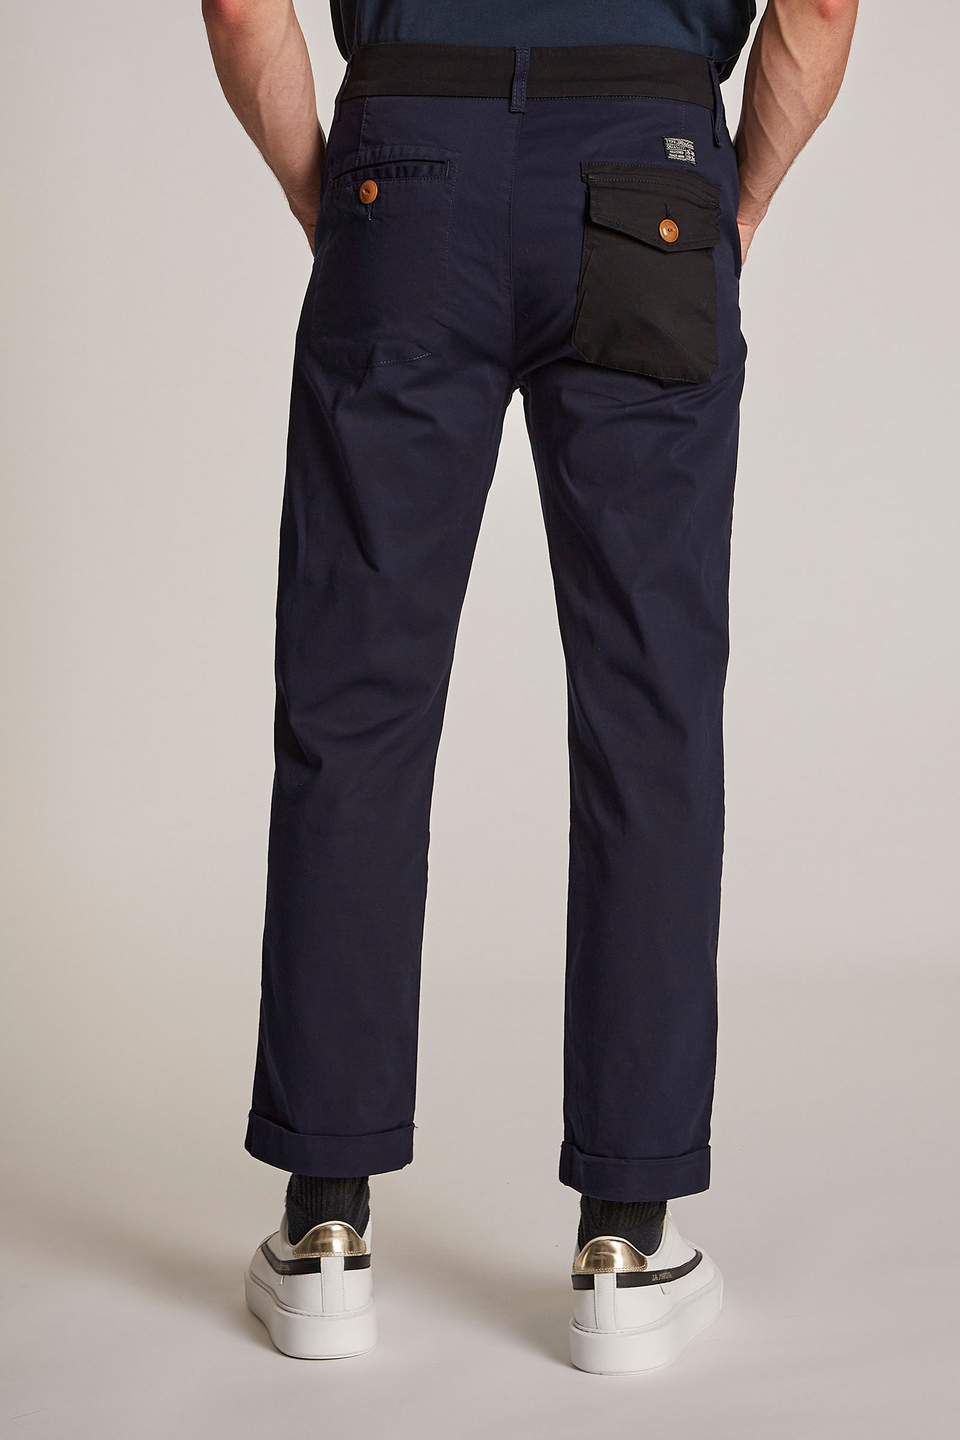 Pantalone da uomo in cotone misto lino regular fit - La Martina - Official Online Shop